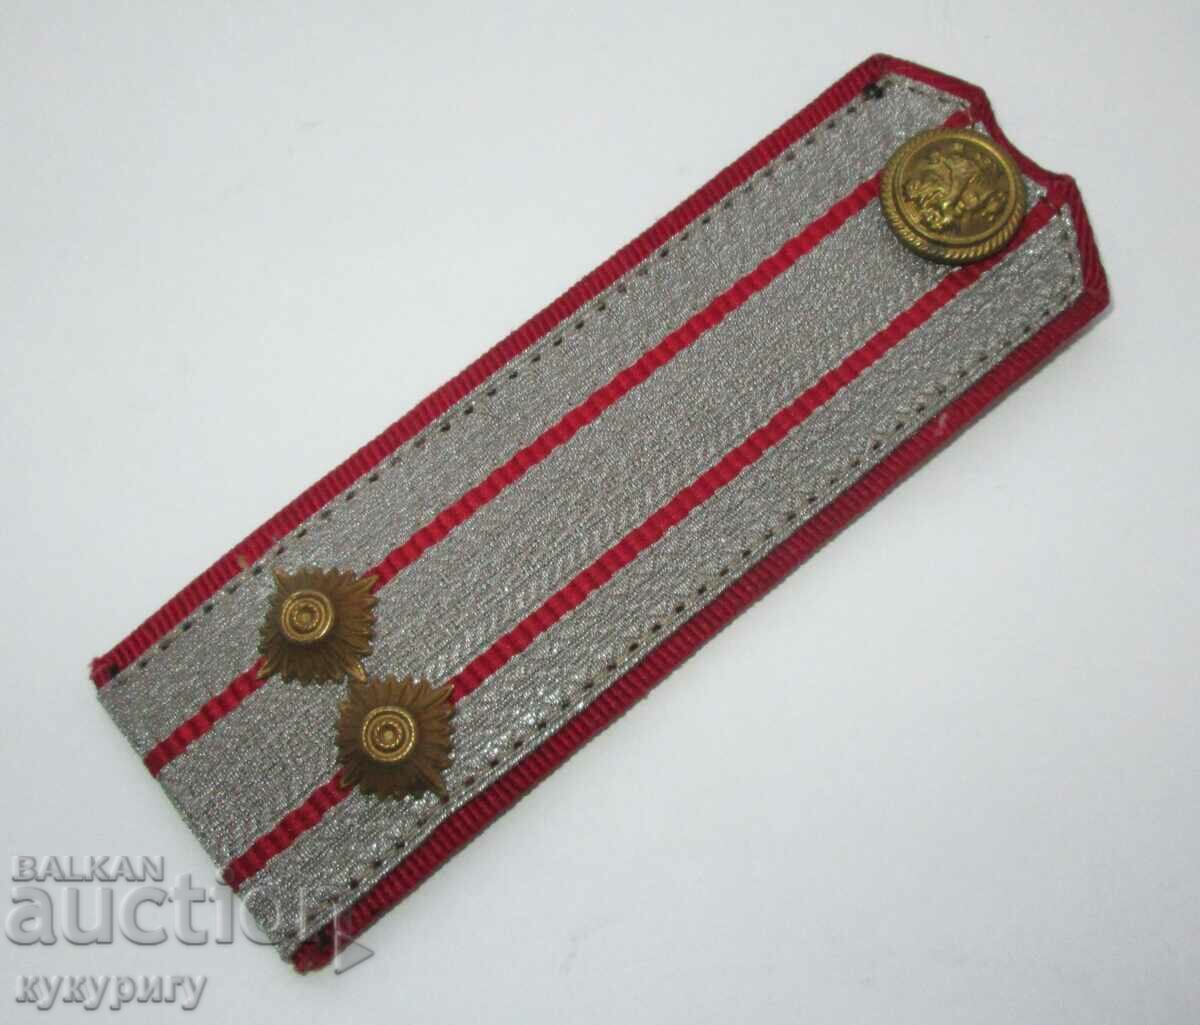 Vechi epoleți regali ai uniformei militare din cel de-al doilea război mondial